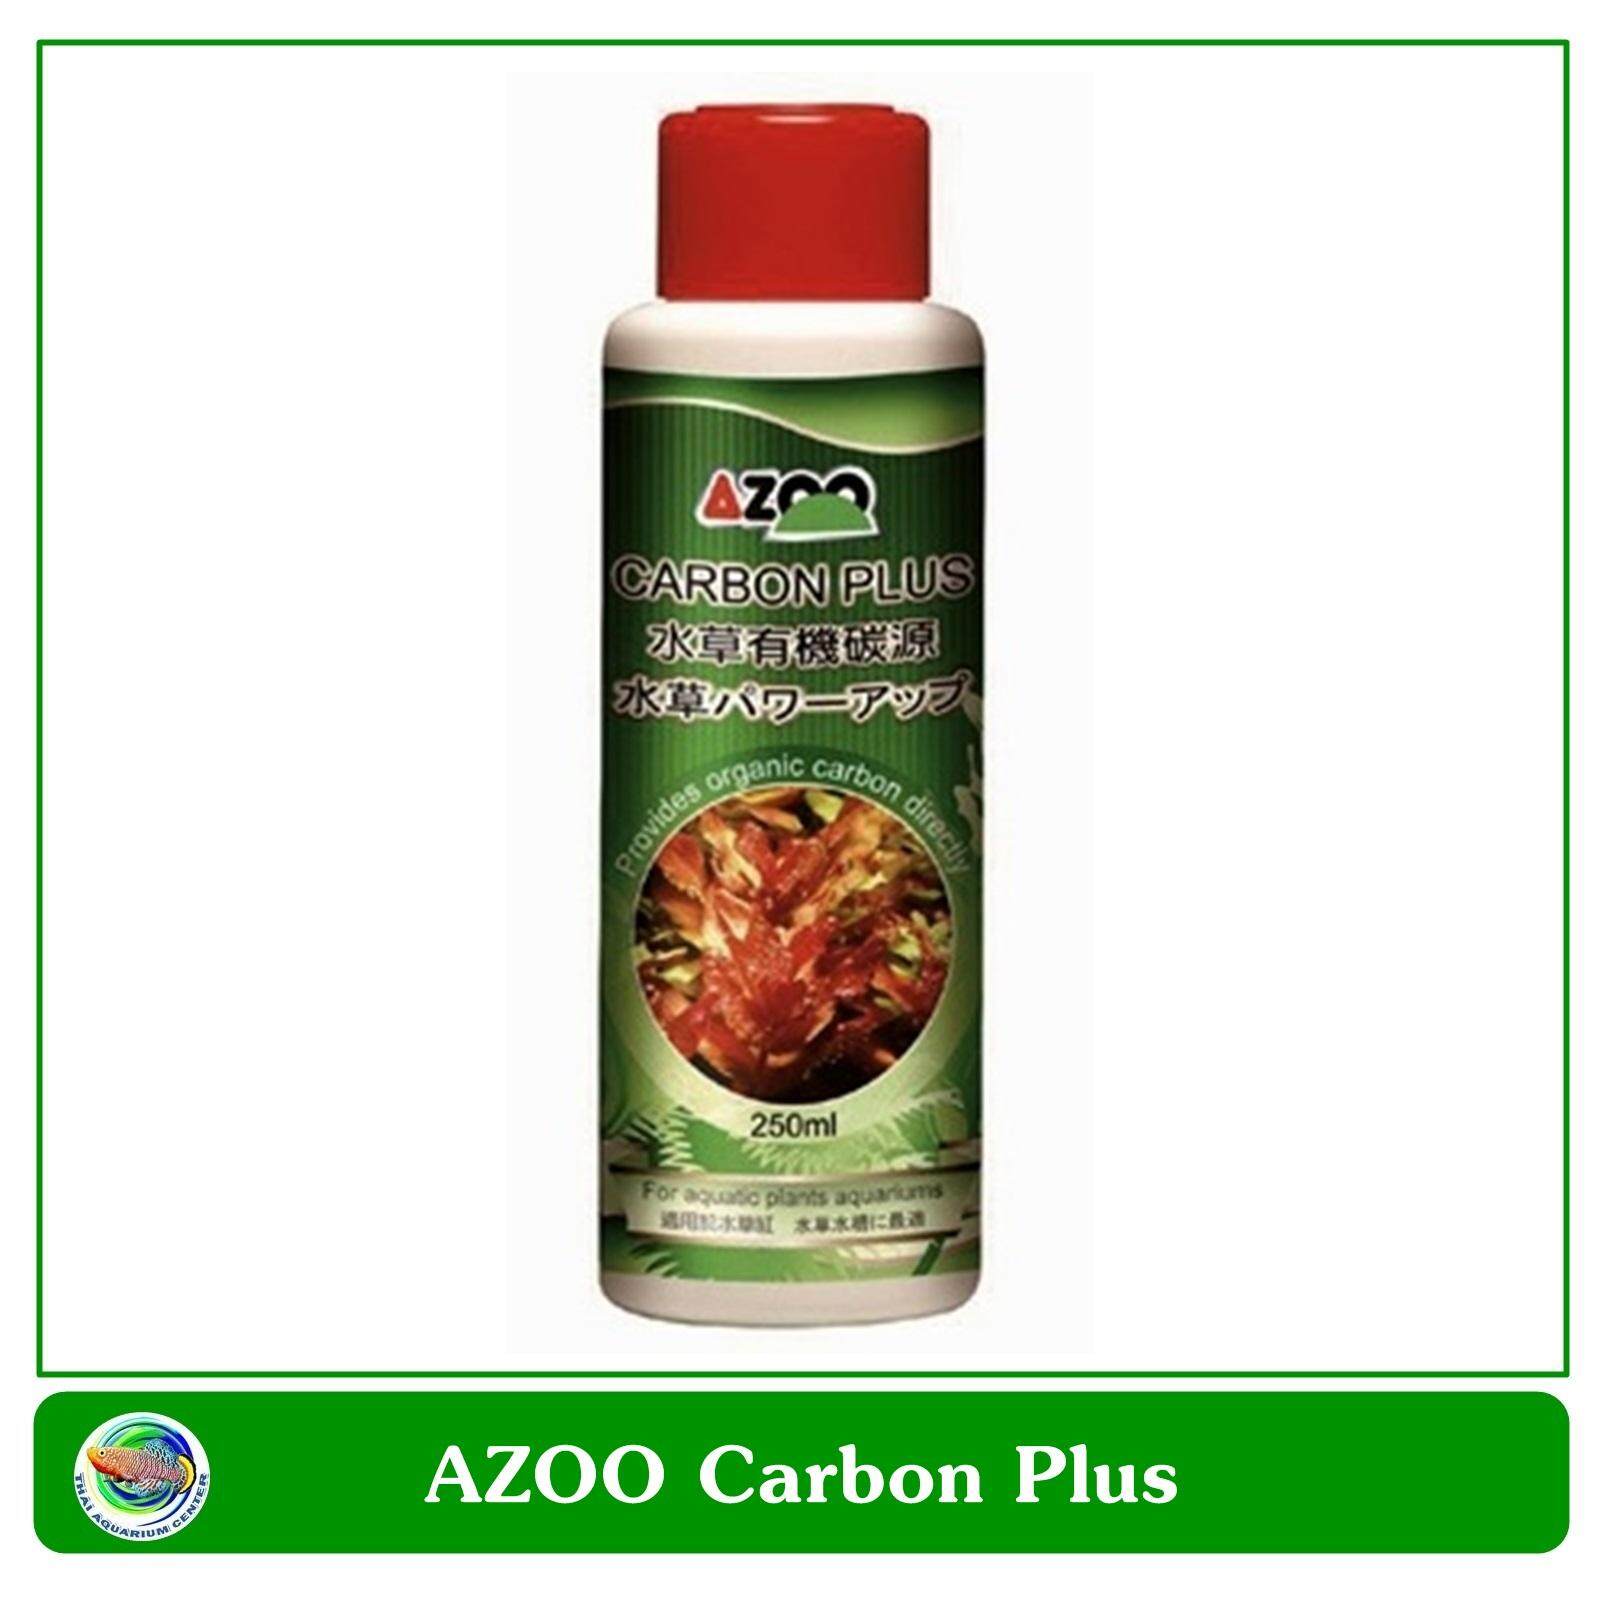 AZOO Carbon Plus คาร์บอนน้ำ ช่วยลดตะไคร่น้ำ ช่วยพืชน้ำดูดซับคาร์บอนไดออกไซด์ 250 ml.